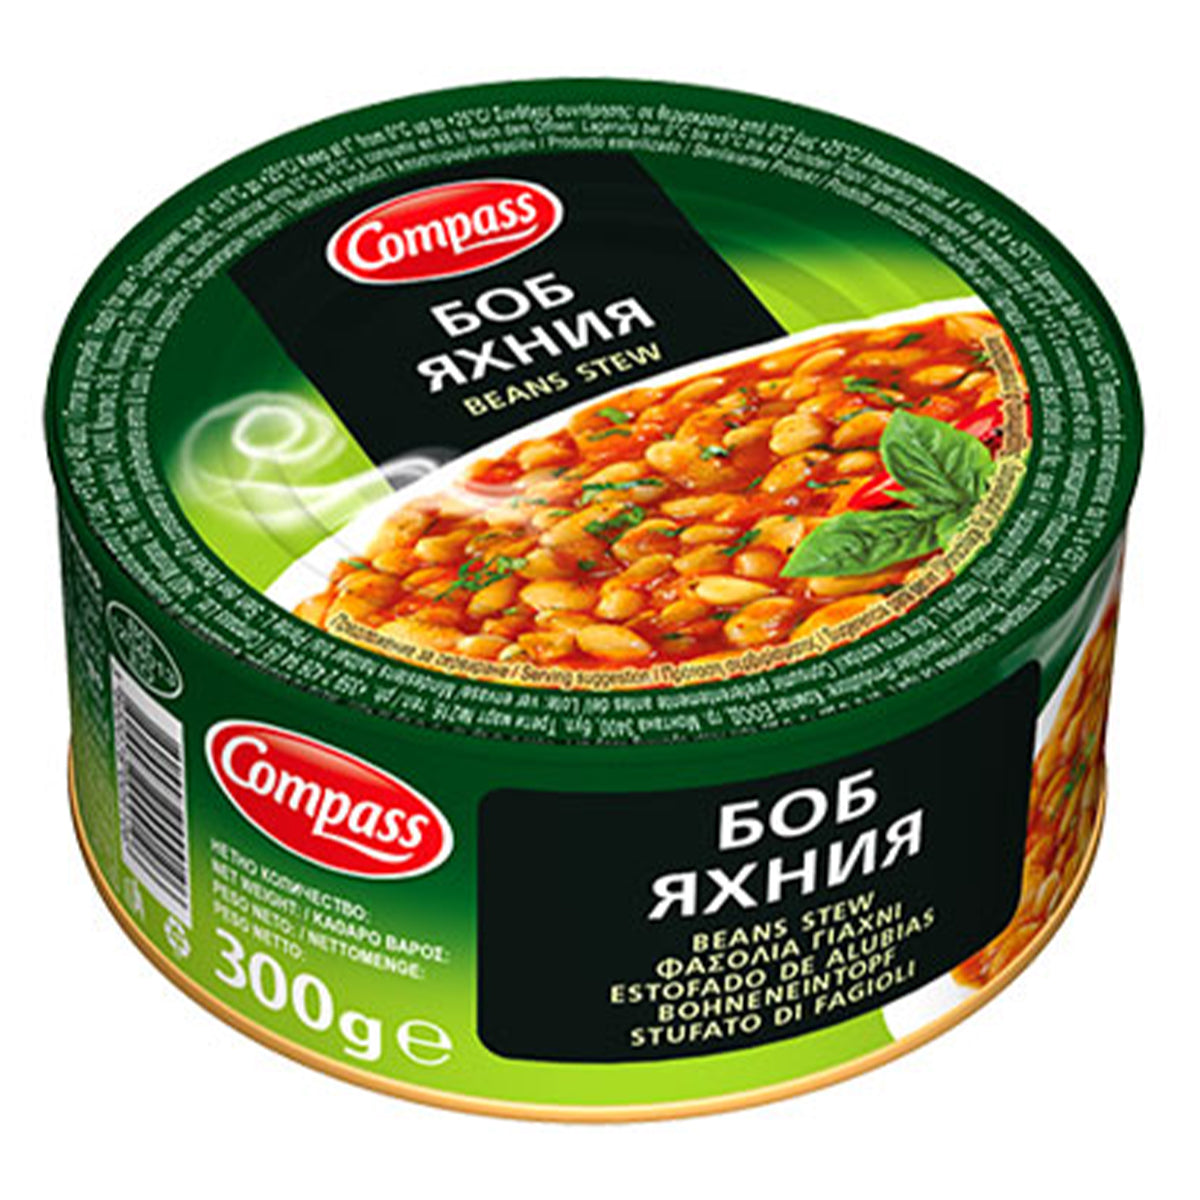 A tin of Compass Beans Stew - 300g.